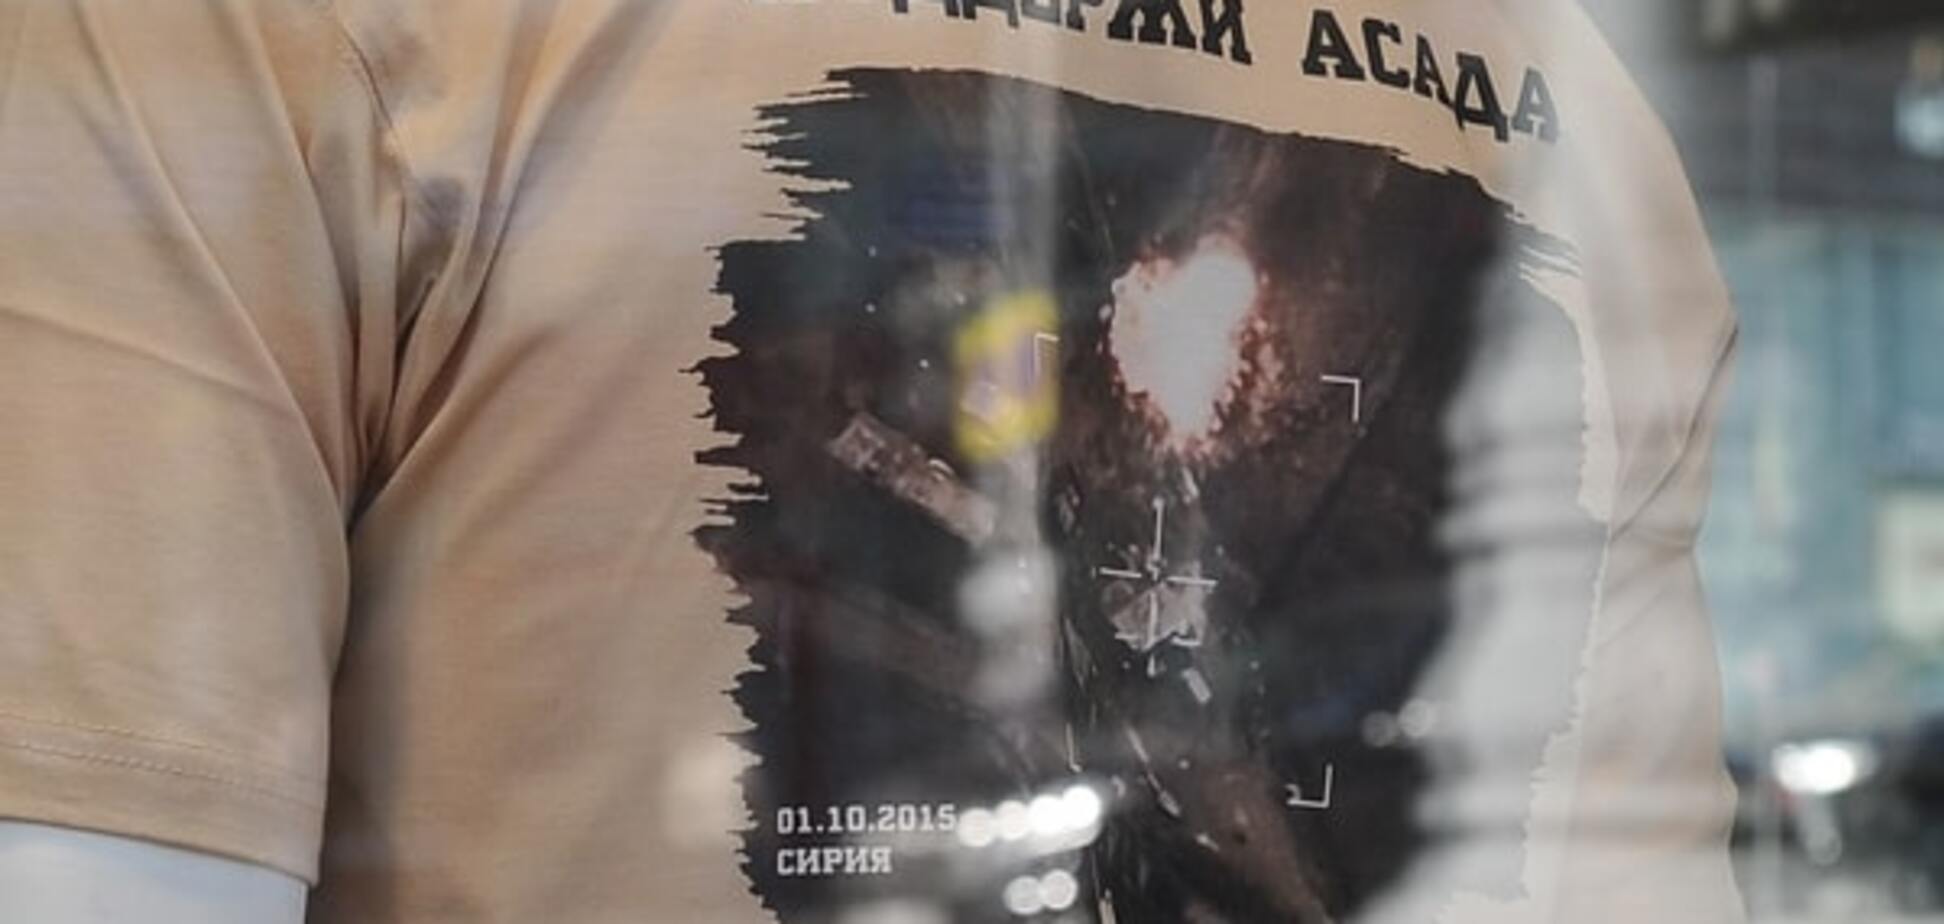 Поддержи Асада! Военторг России выпустил футболки с кадрами ударов по Сирии: фоторепортаж